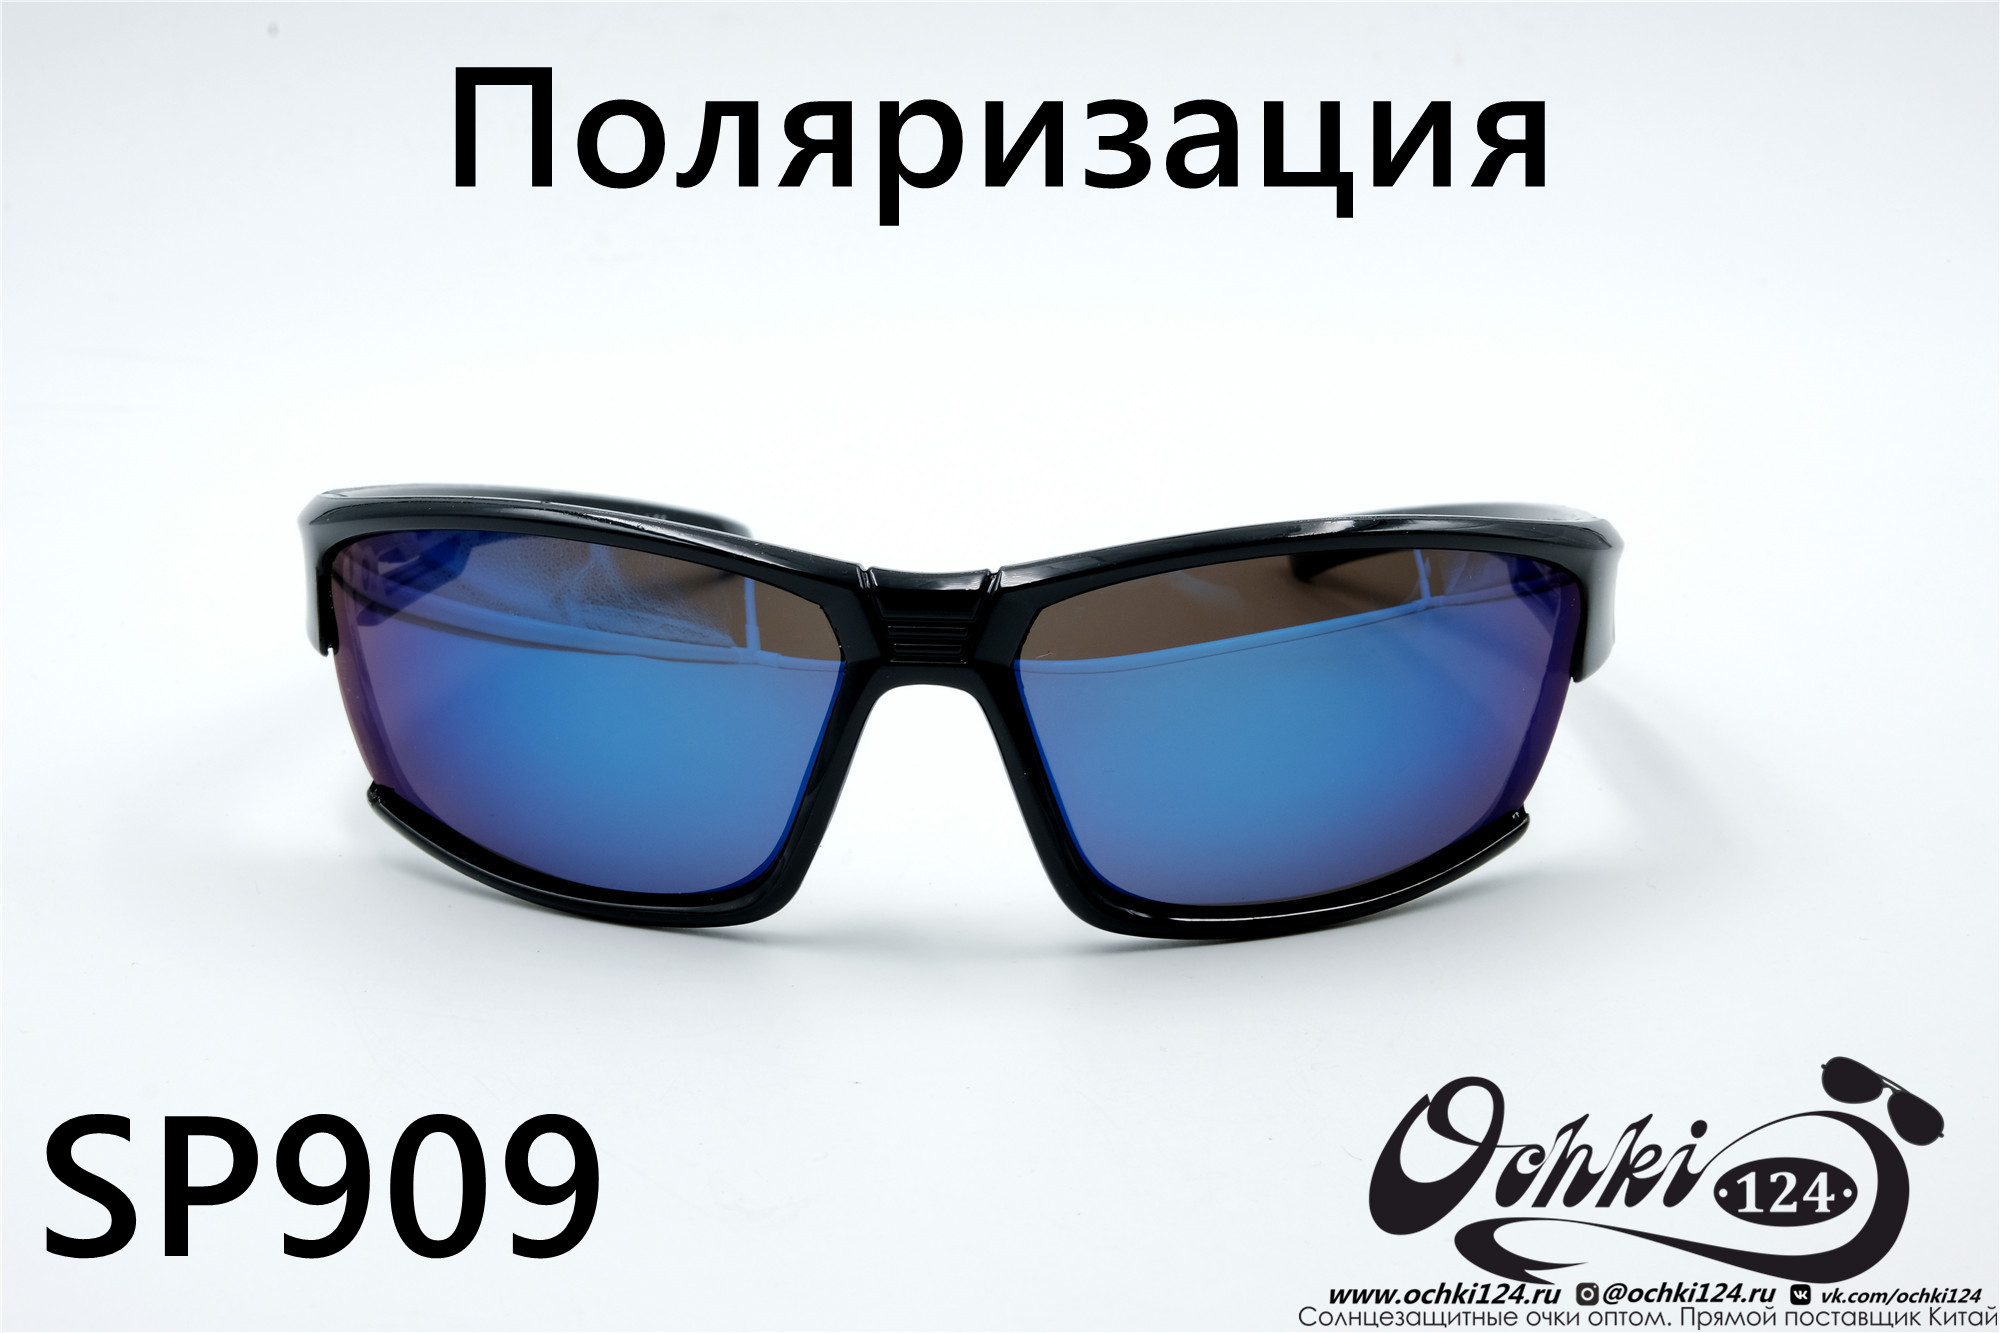  Солнцезащитные очки картинка 2022 Мужские Поляризованные Спорт Materice SP909-8 